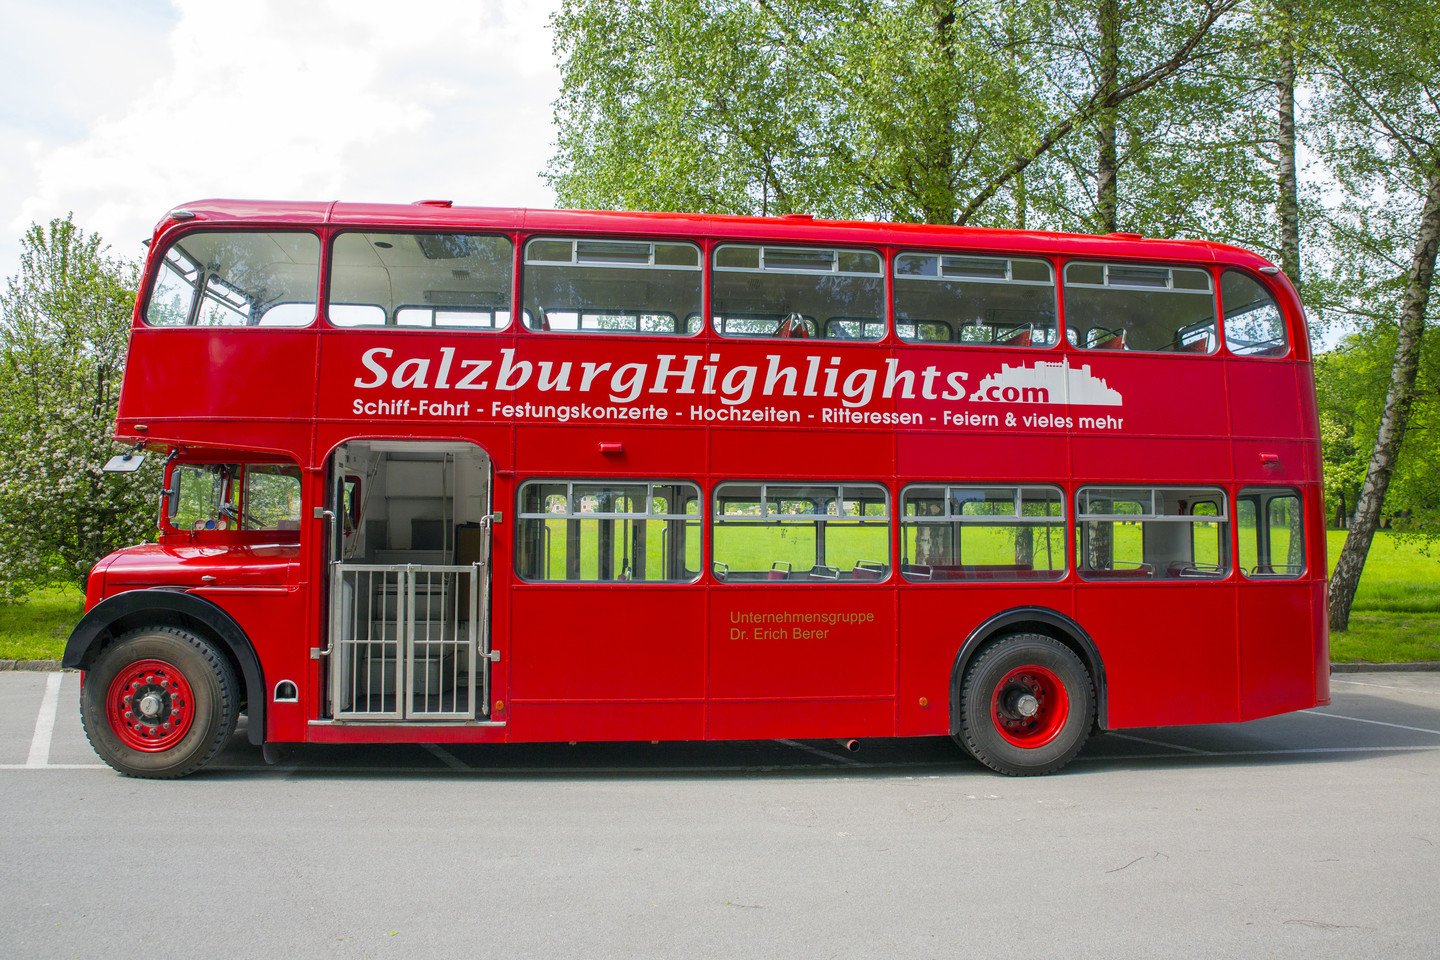 London Doppeldecker Bus